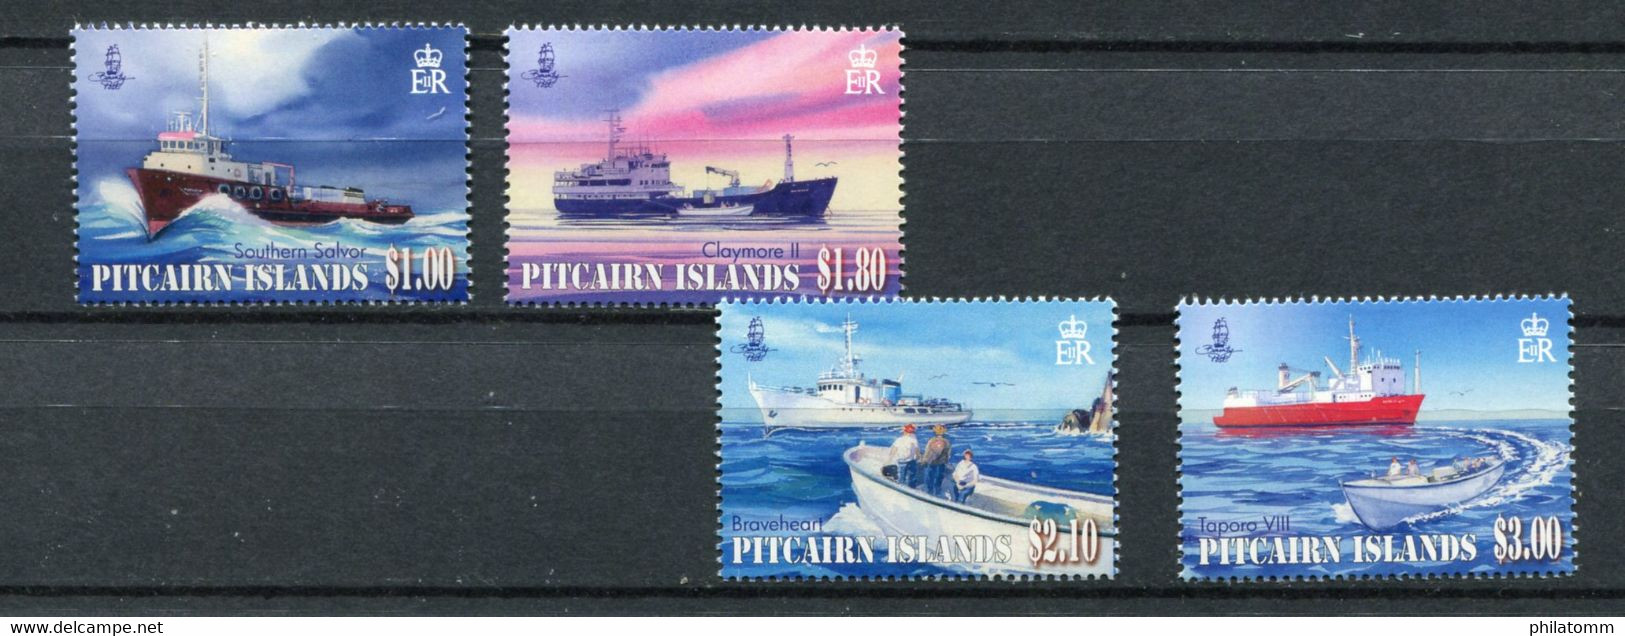 Pitcairn - Mi.Nr. 836 / 839 - "Versorgungsschiffe" ** / MNH (aus Dem Jahr 2011) - Pitcairninsel